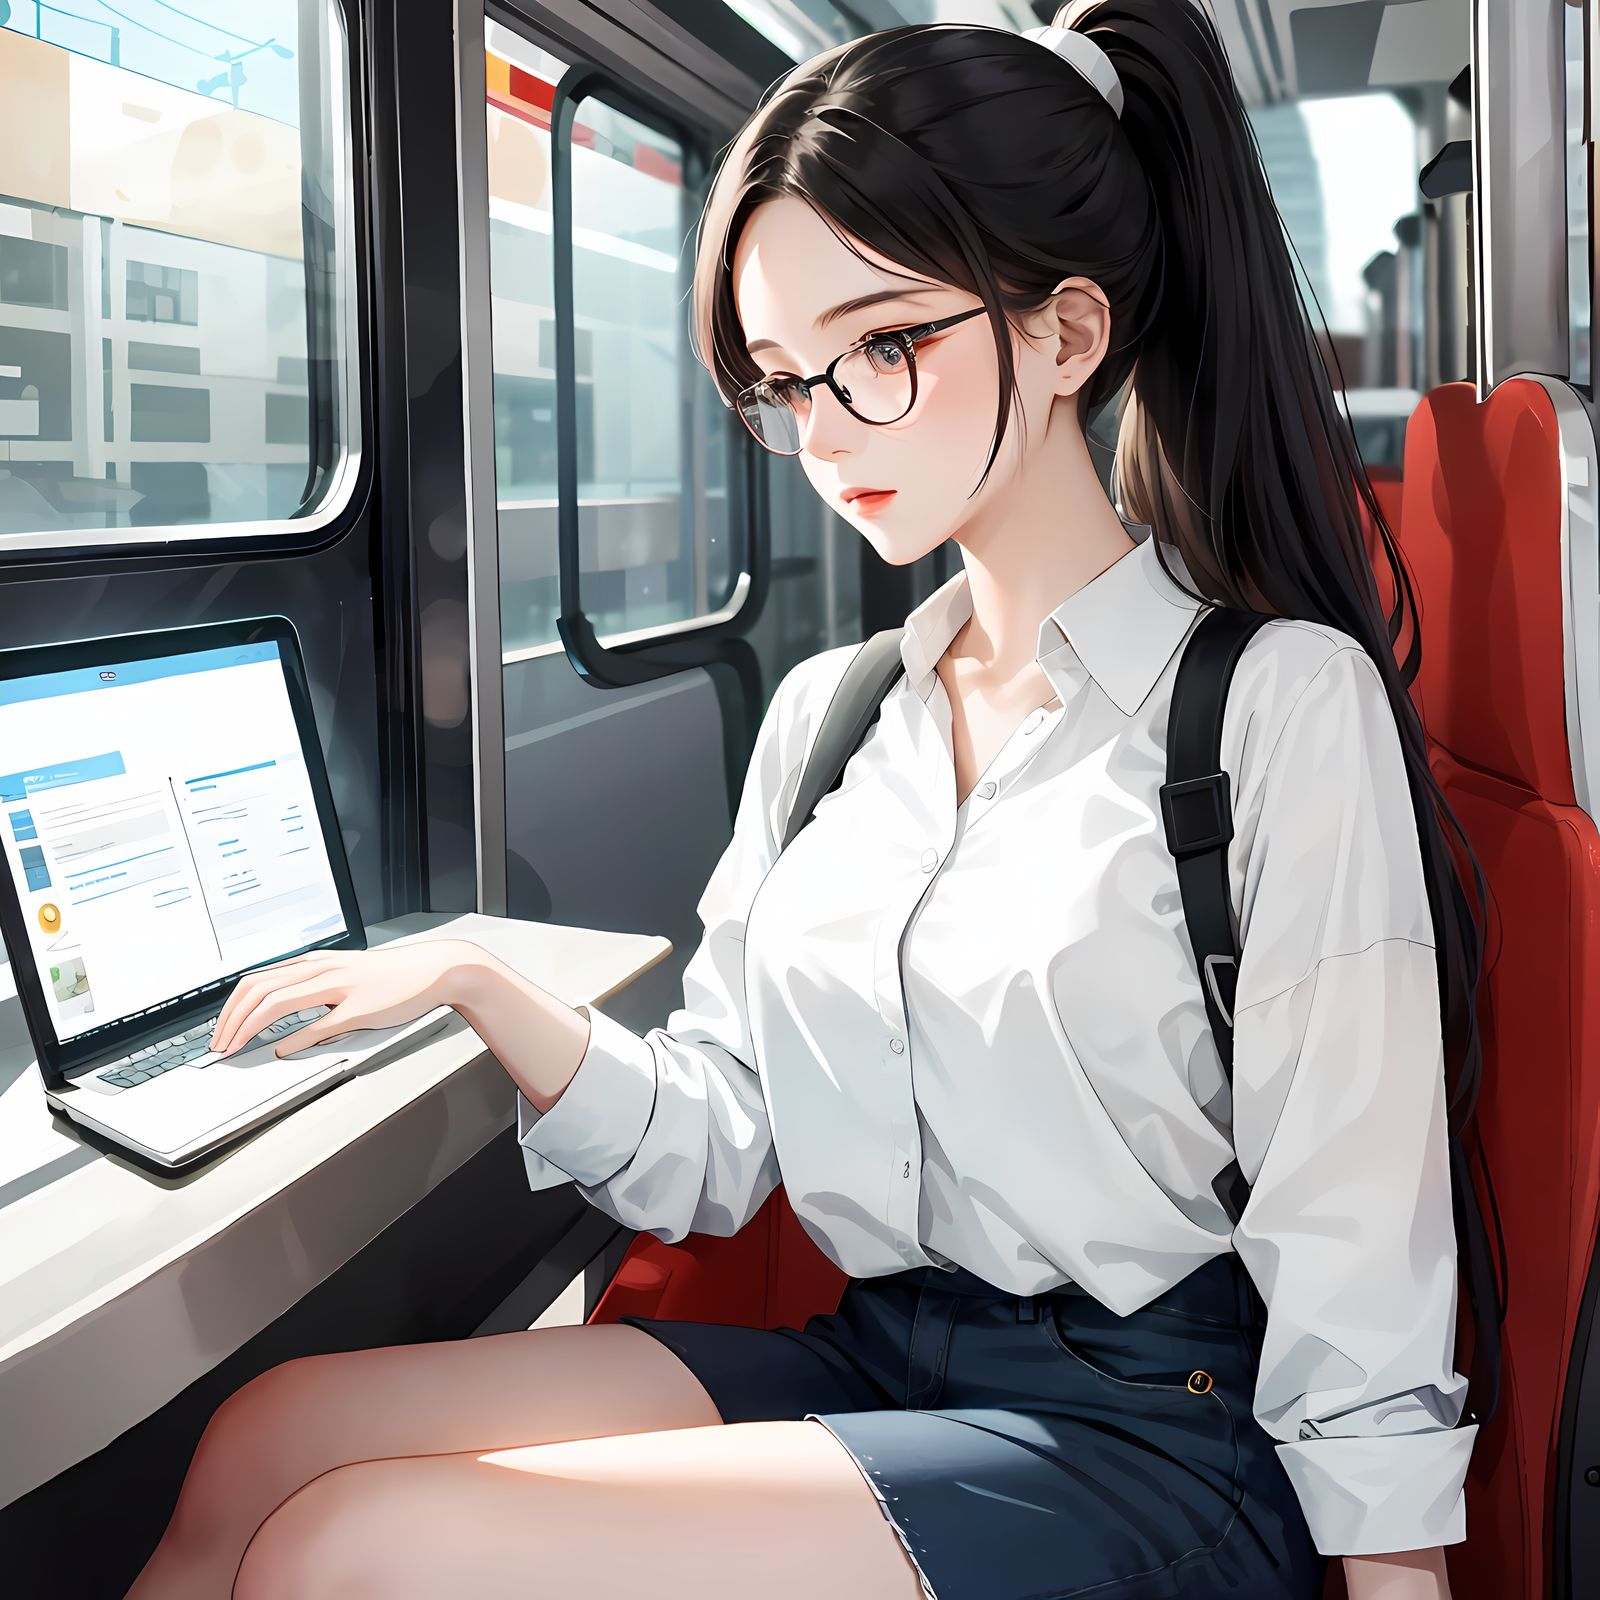 二次元少女乘着火车操控平板电脑，她眼镜齐刘海，长发飘逸，身边还有手机和笔记本电脑。插画图片壁纸